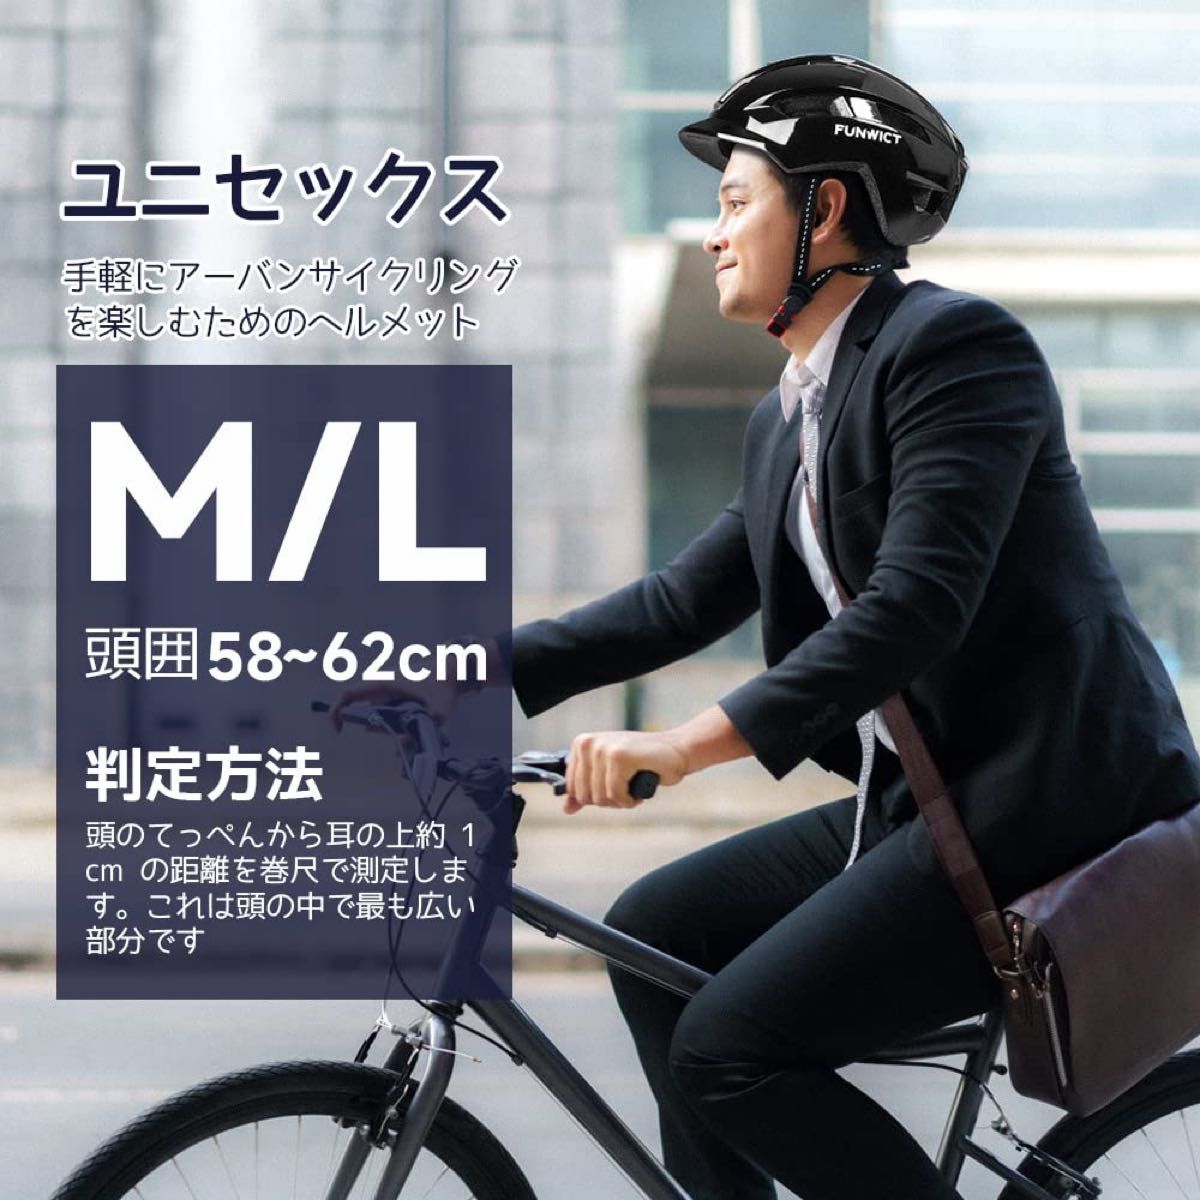 FUNWICT アーバン・シティヘルメット バイザー付 軽量サイクリングヘルメット 大人用 サイズ: M/L(57-62cm)